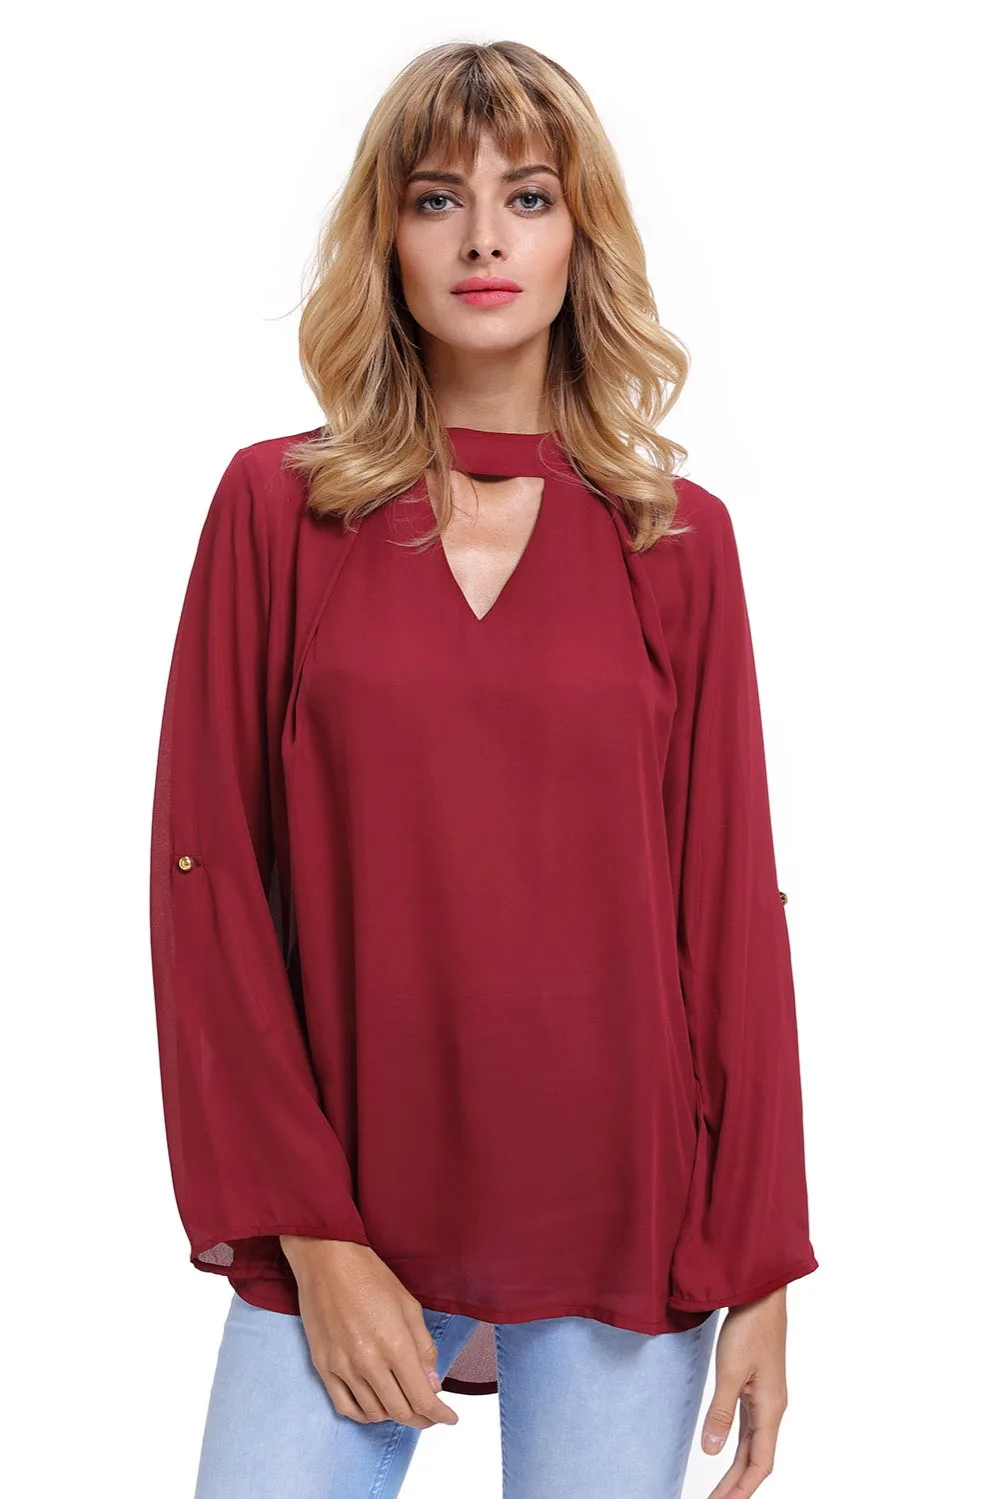 cheap sleeveless blouses for women dresses